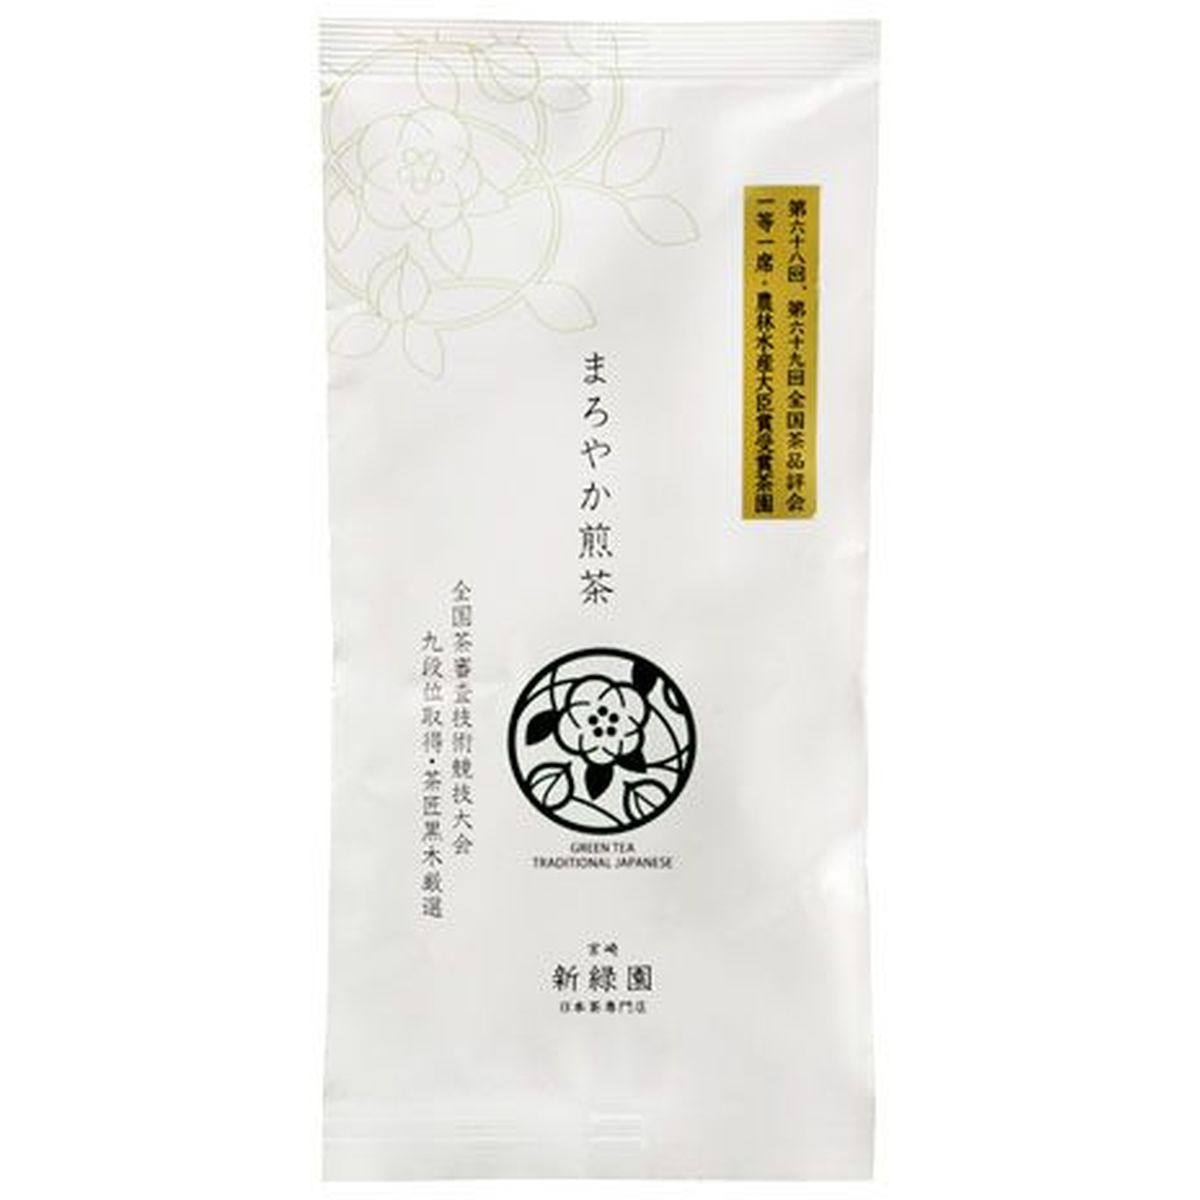 【30個入リ】新緑園 マロヤカ煎茶 100g